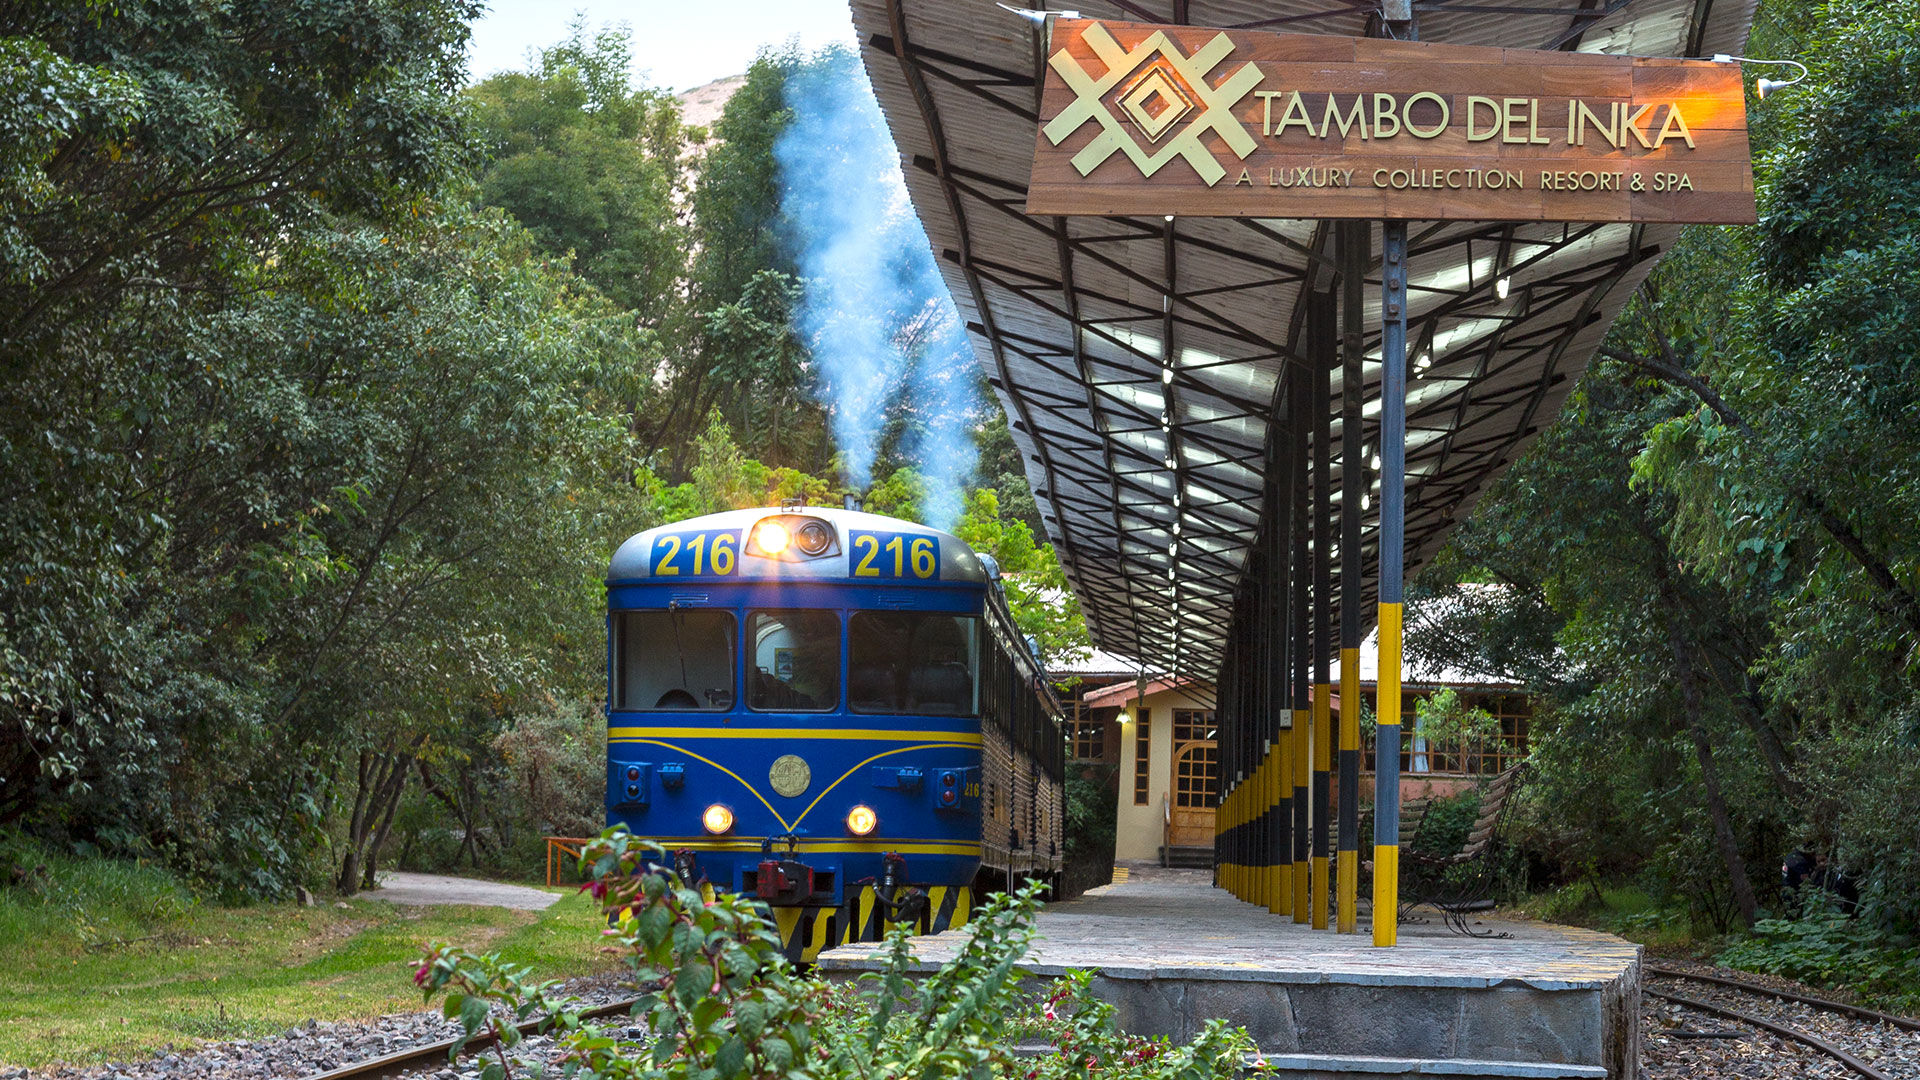 Estación del tren Tambo del Inka rodeada de árboles